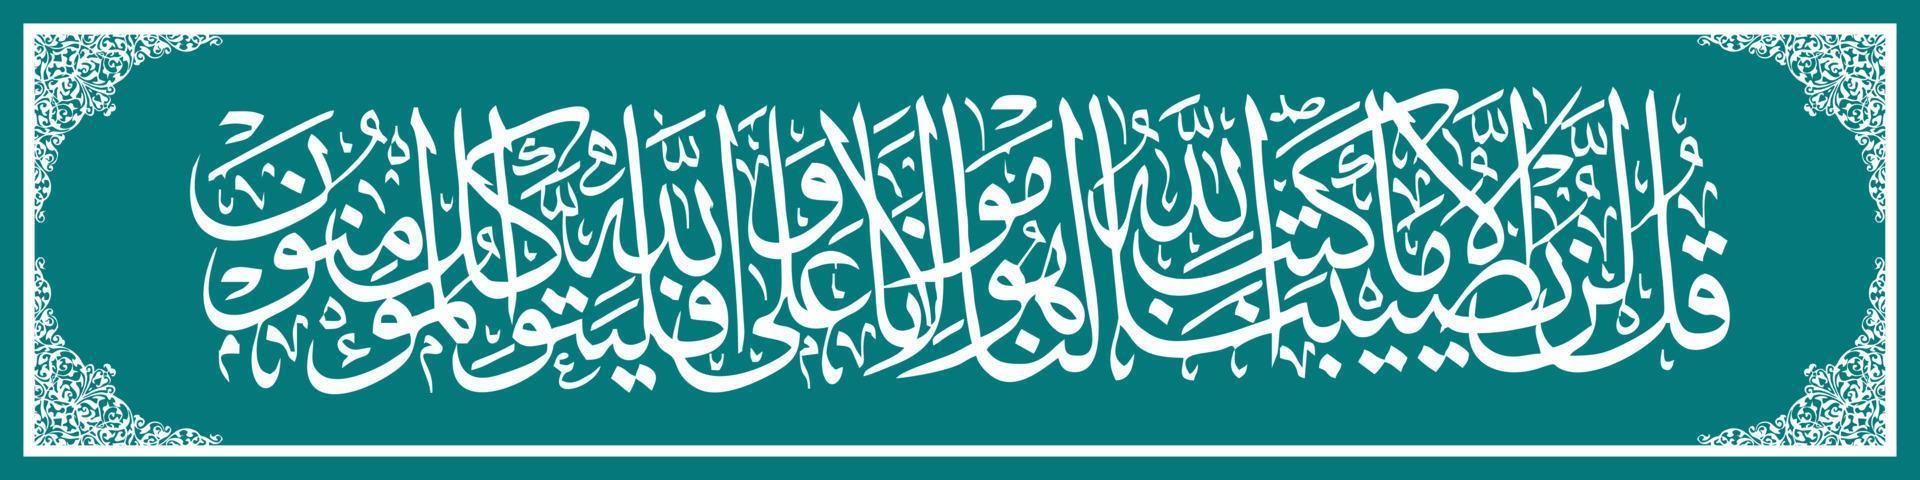 caligrafia árabe al quran surah attaubah 51, tradução diz muhammad, nada acontecerá conosco, exceto o que Allah ordenou para nós. ele é nosso protetor, vetor